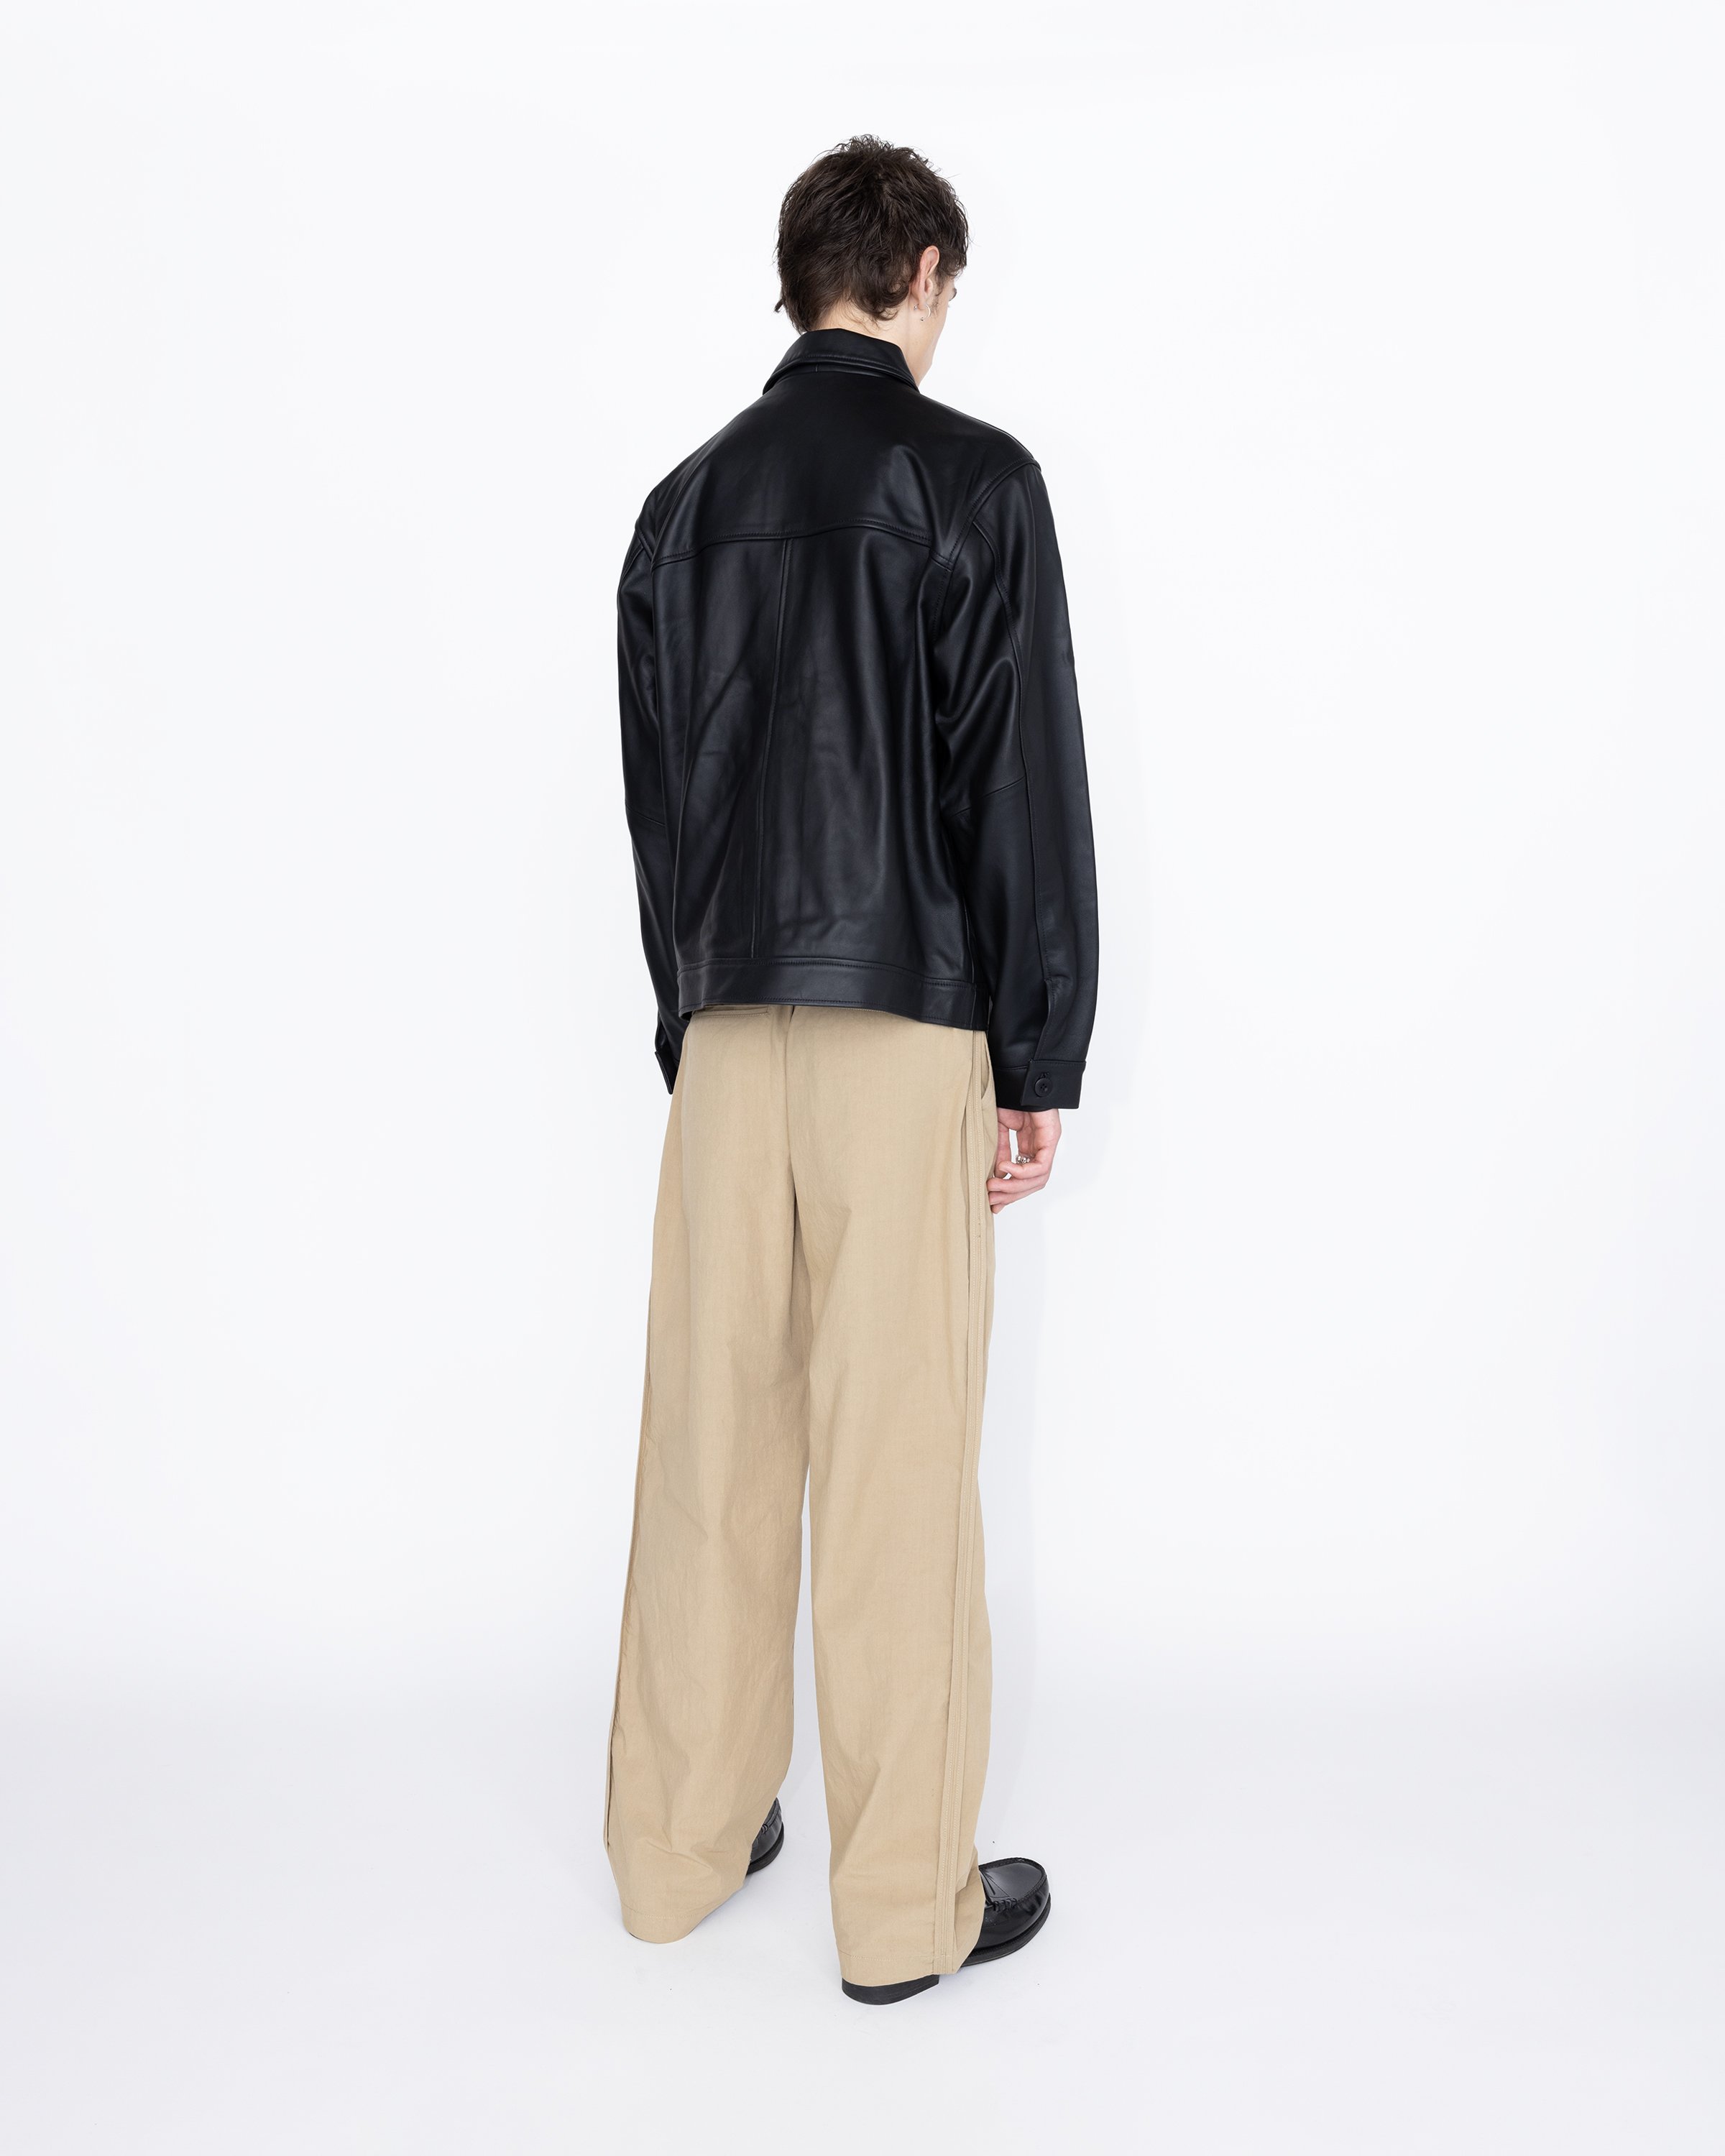 Highsnobiety HS05 - Leather Jacket Black - Clothing - Black - Image 5